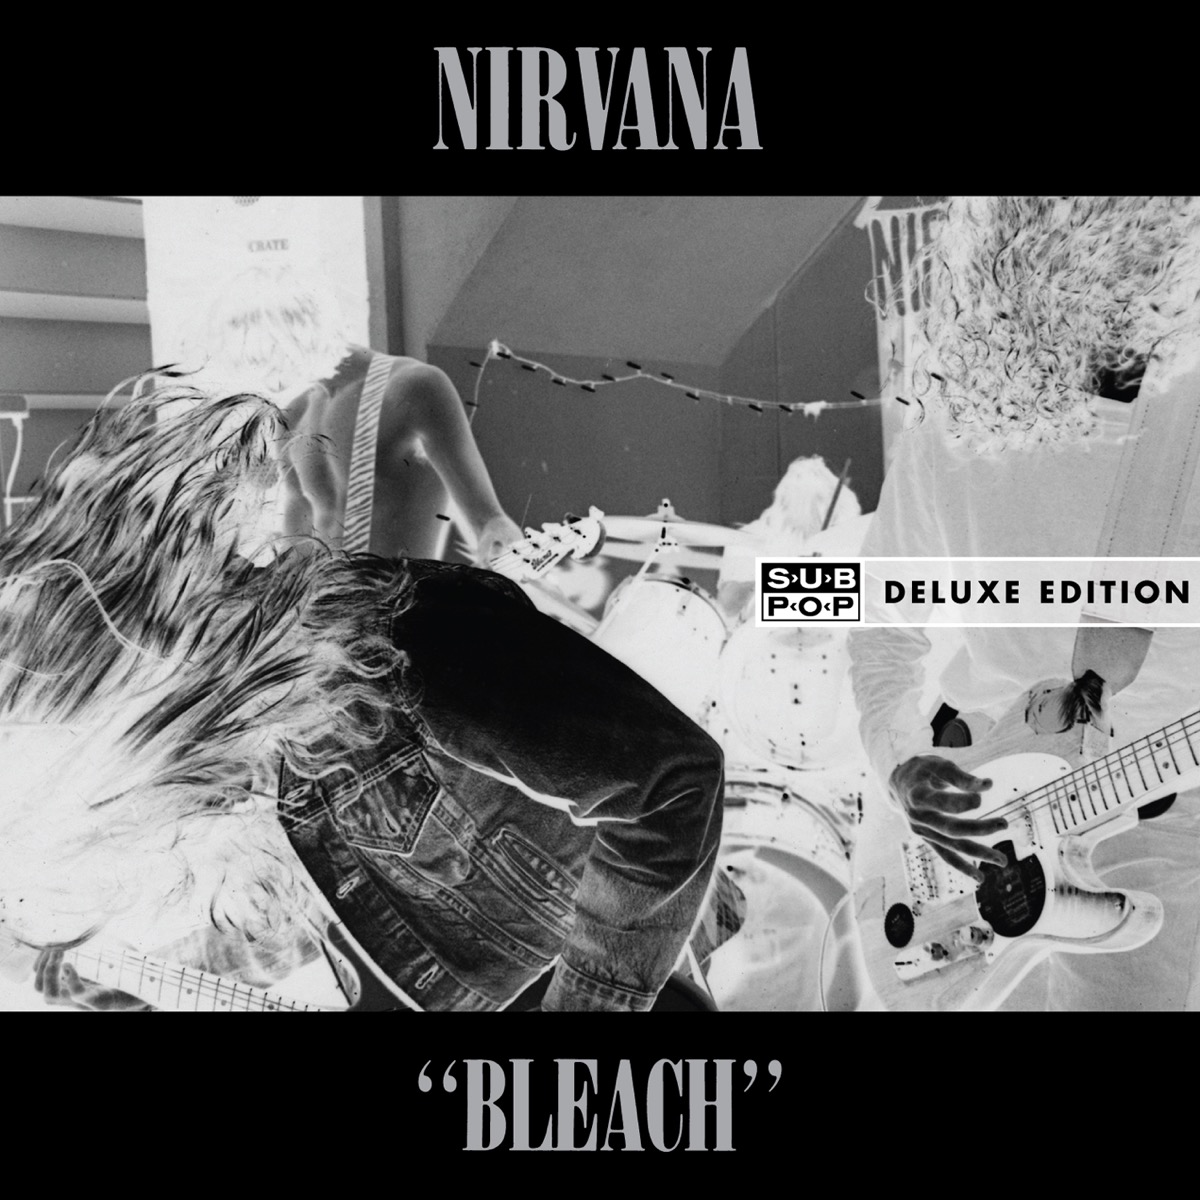 bleach volume 1 20th anniversary